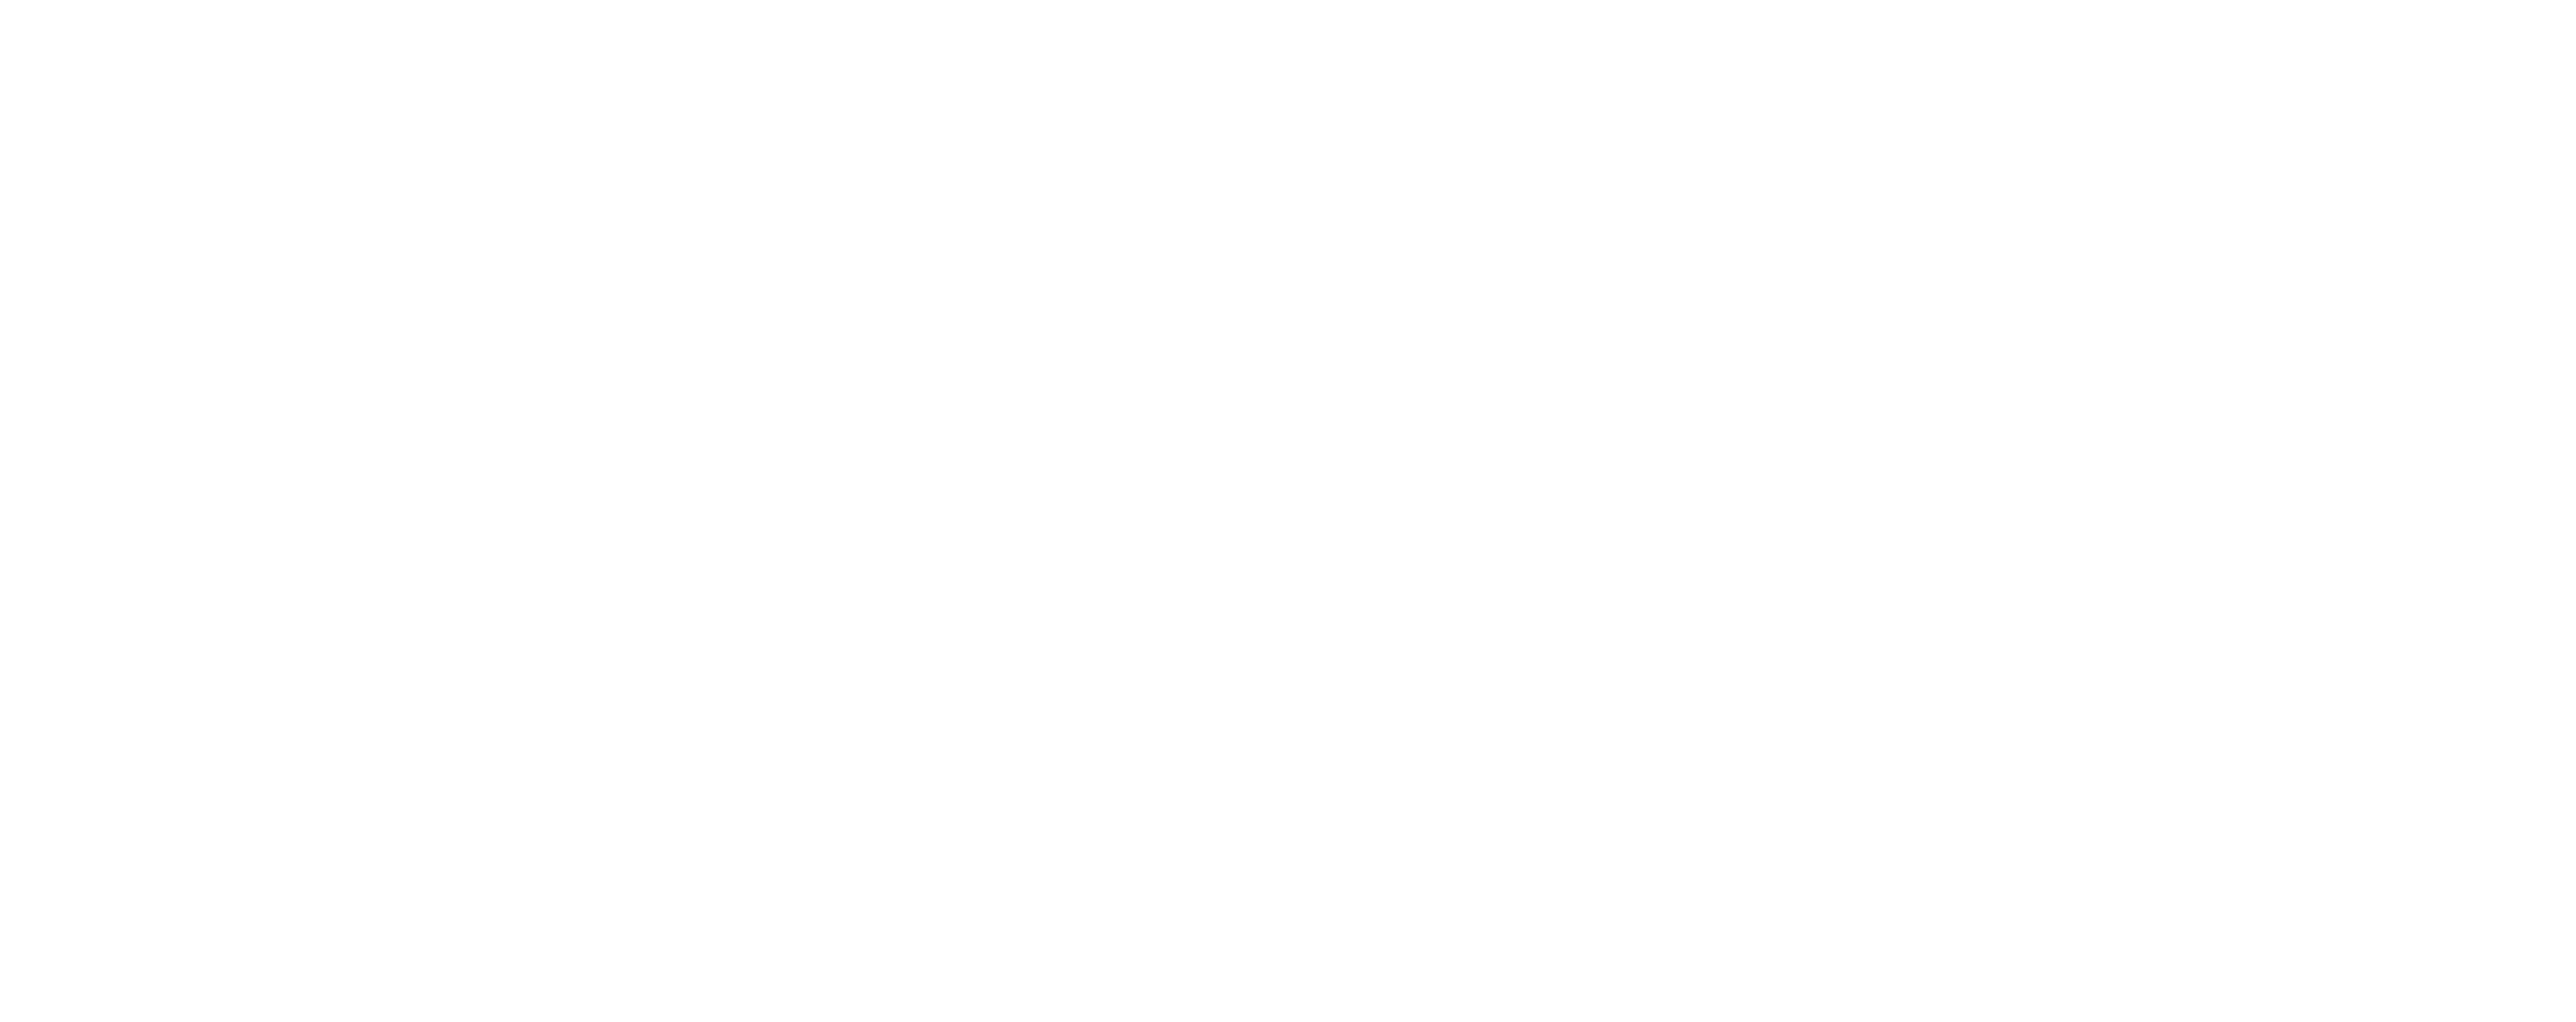 NASA Digital Transformation